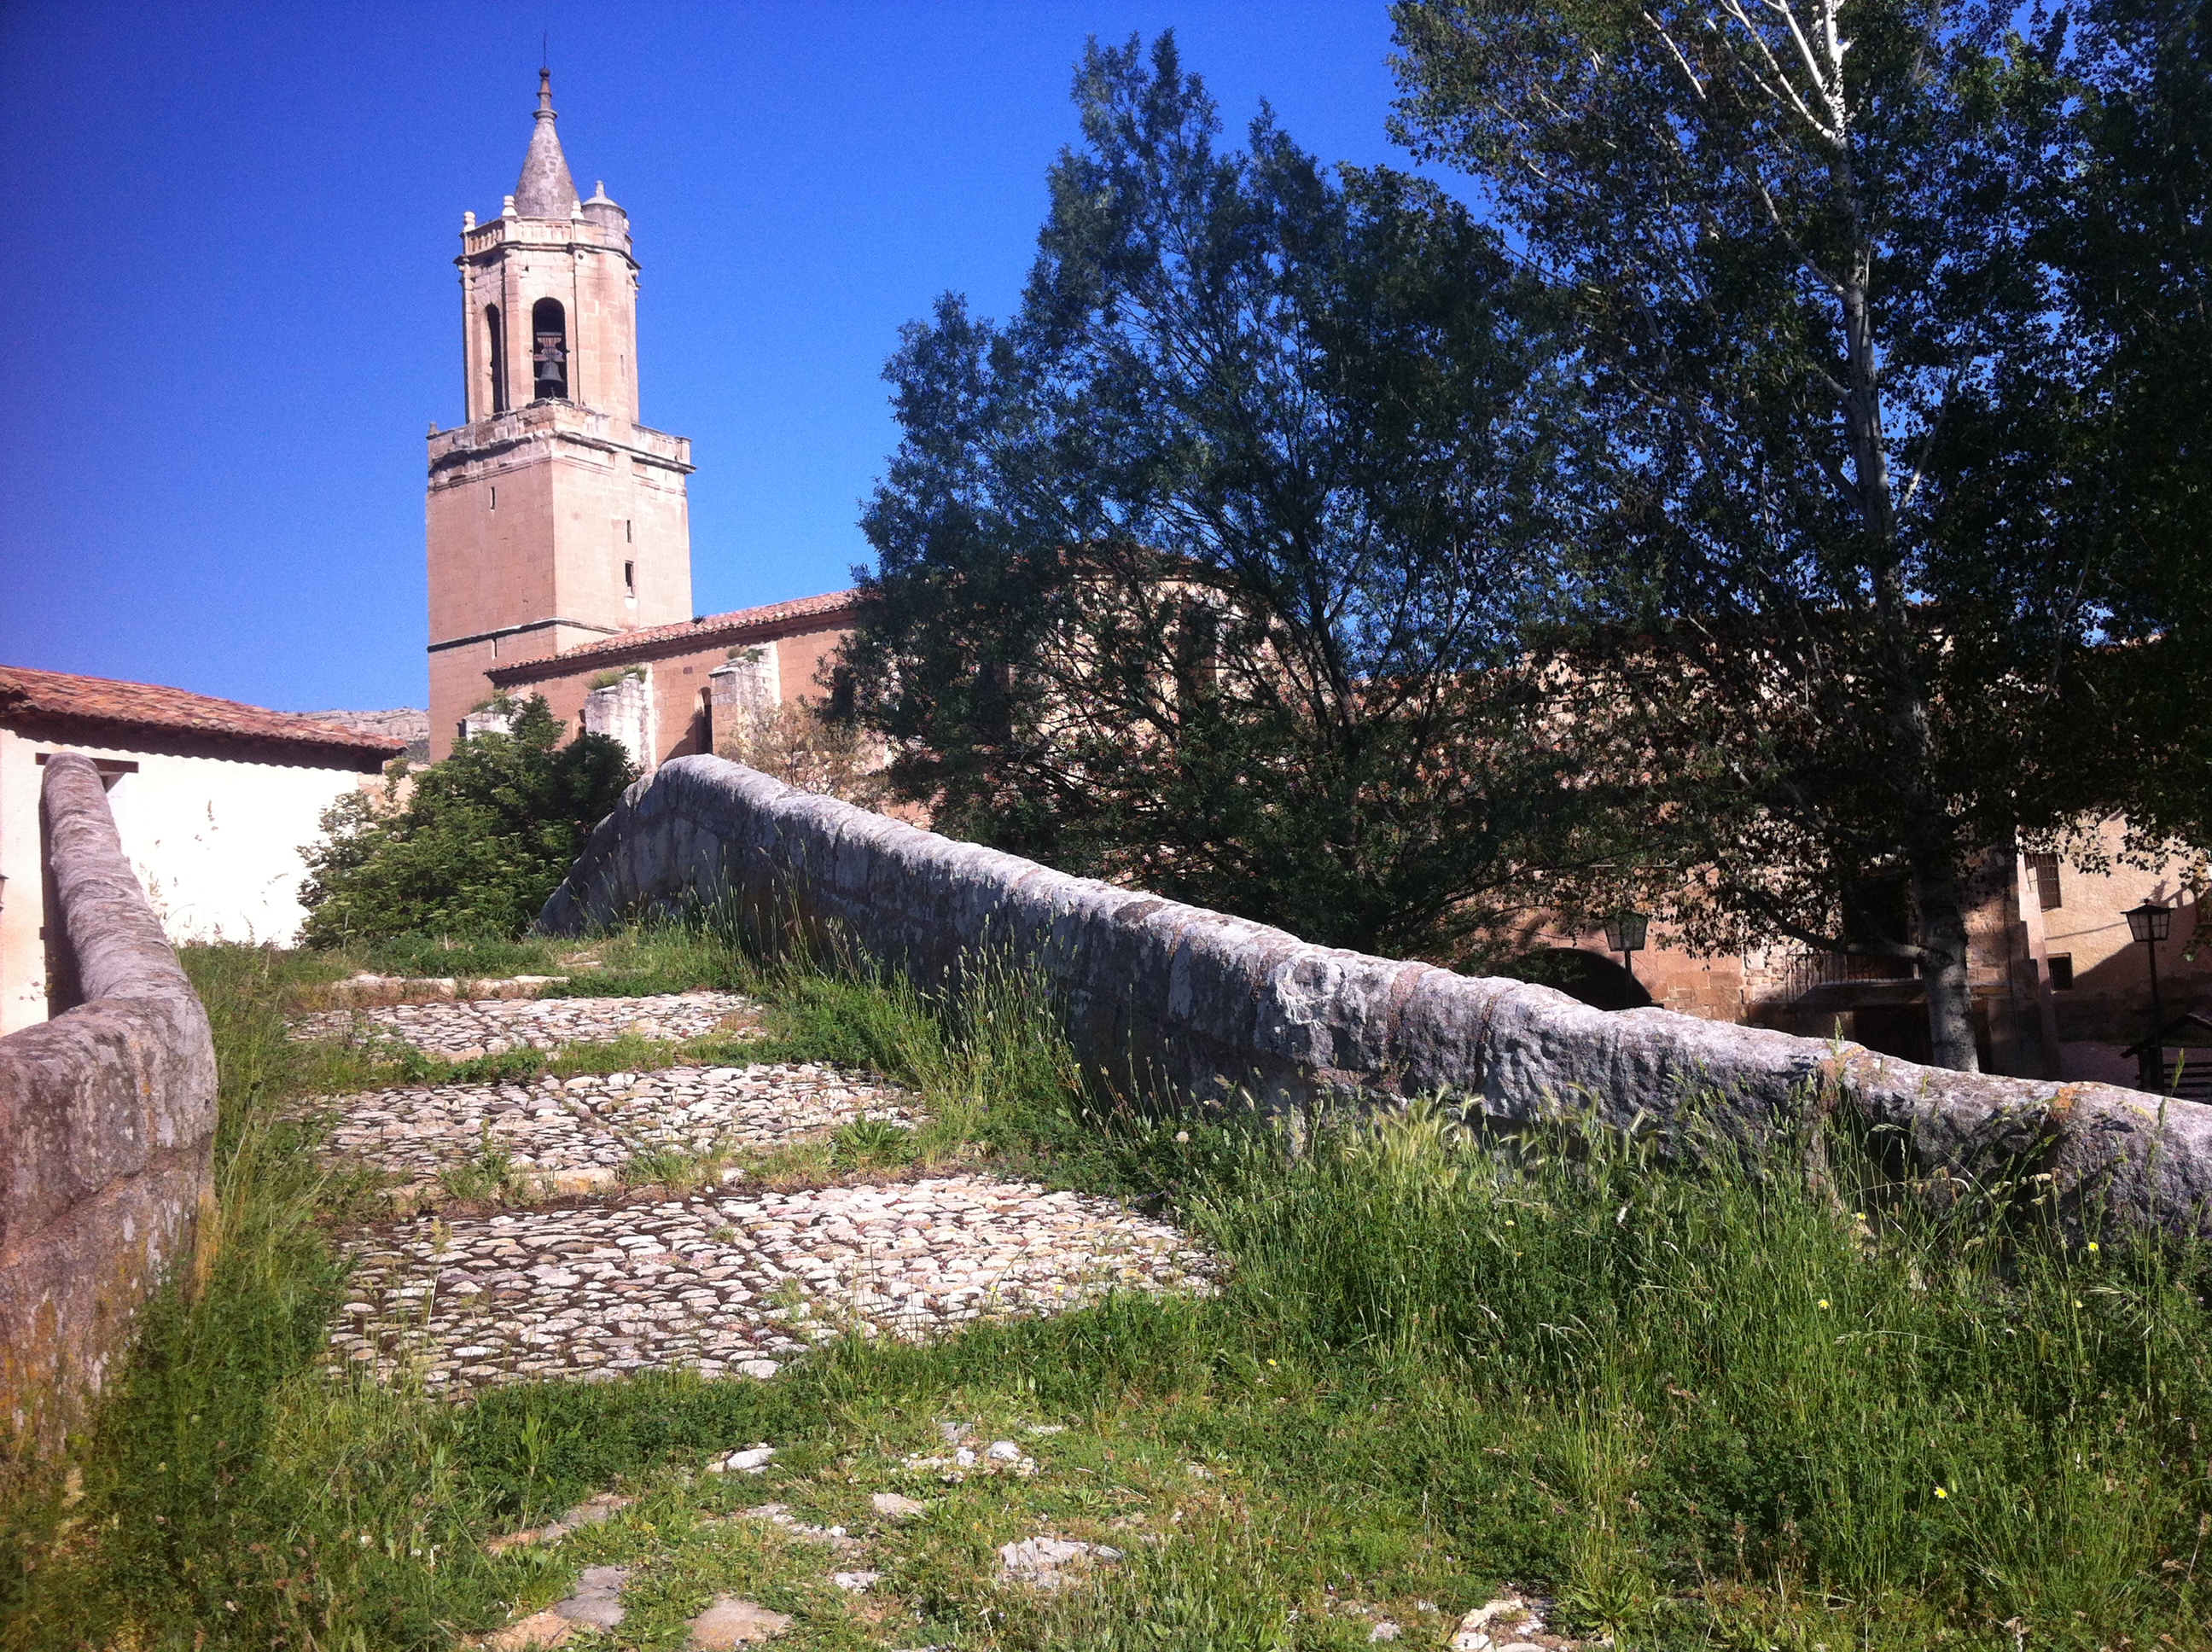 , Mein nächster Urlaub geht an&#8230; &#8220;Teruel&#8221; &#8211; Natur pur dank #sienteteruel, Mario Schumacher Blog